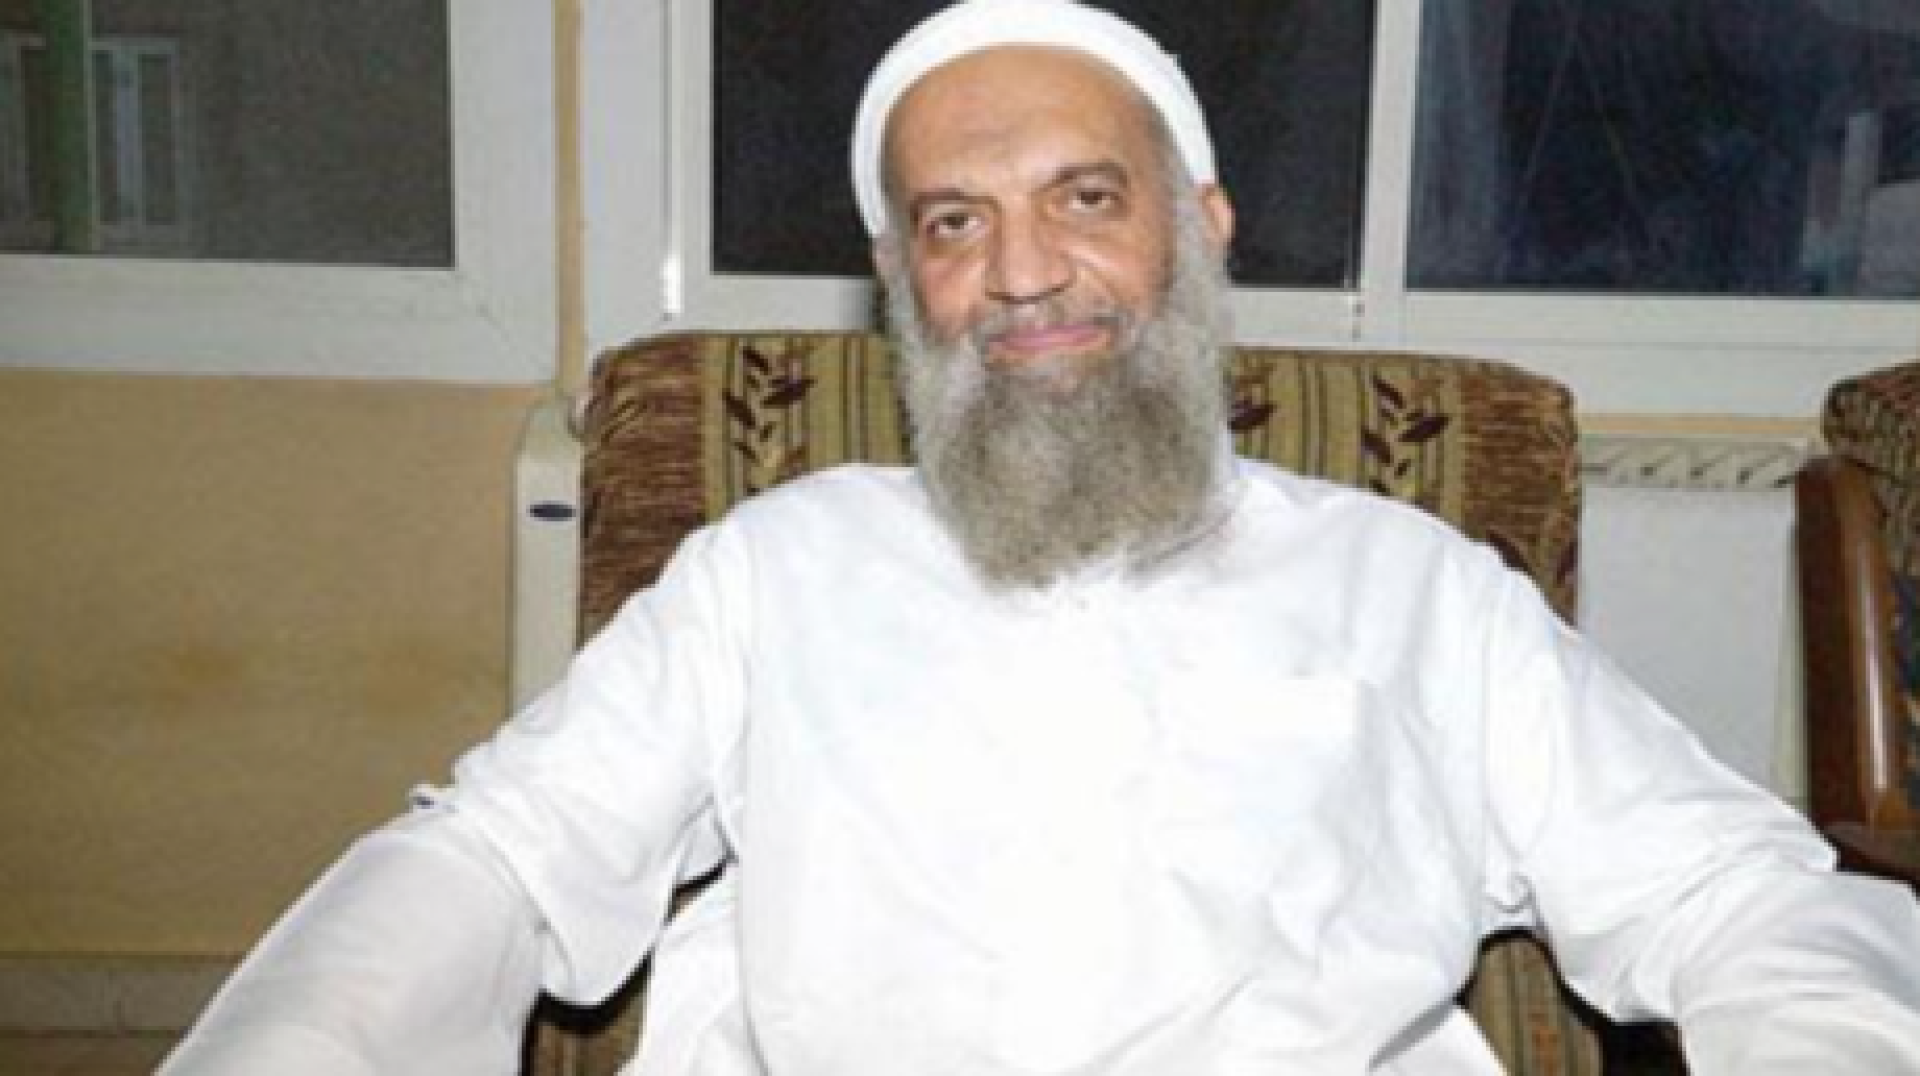 وفاة محمد الظواهري القيادي السابق في حركة الجهاد الإسلامي وشقيق زعيم القاعدة سابقا